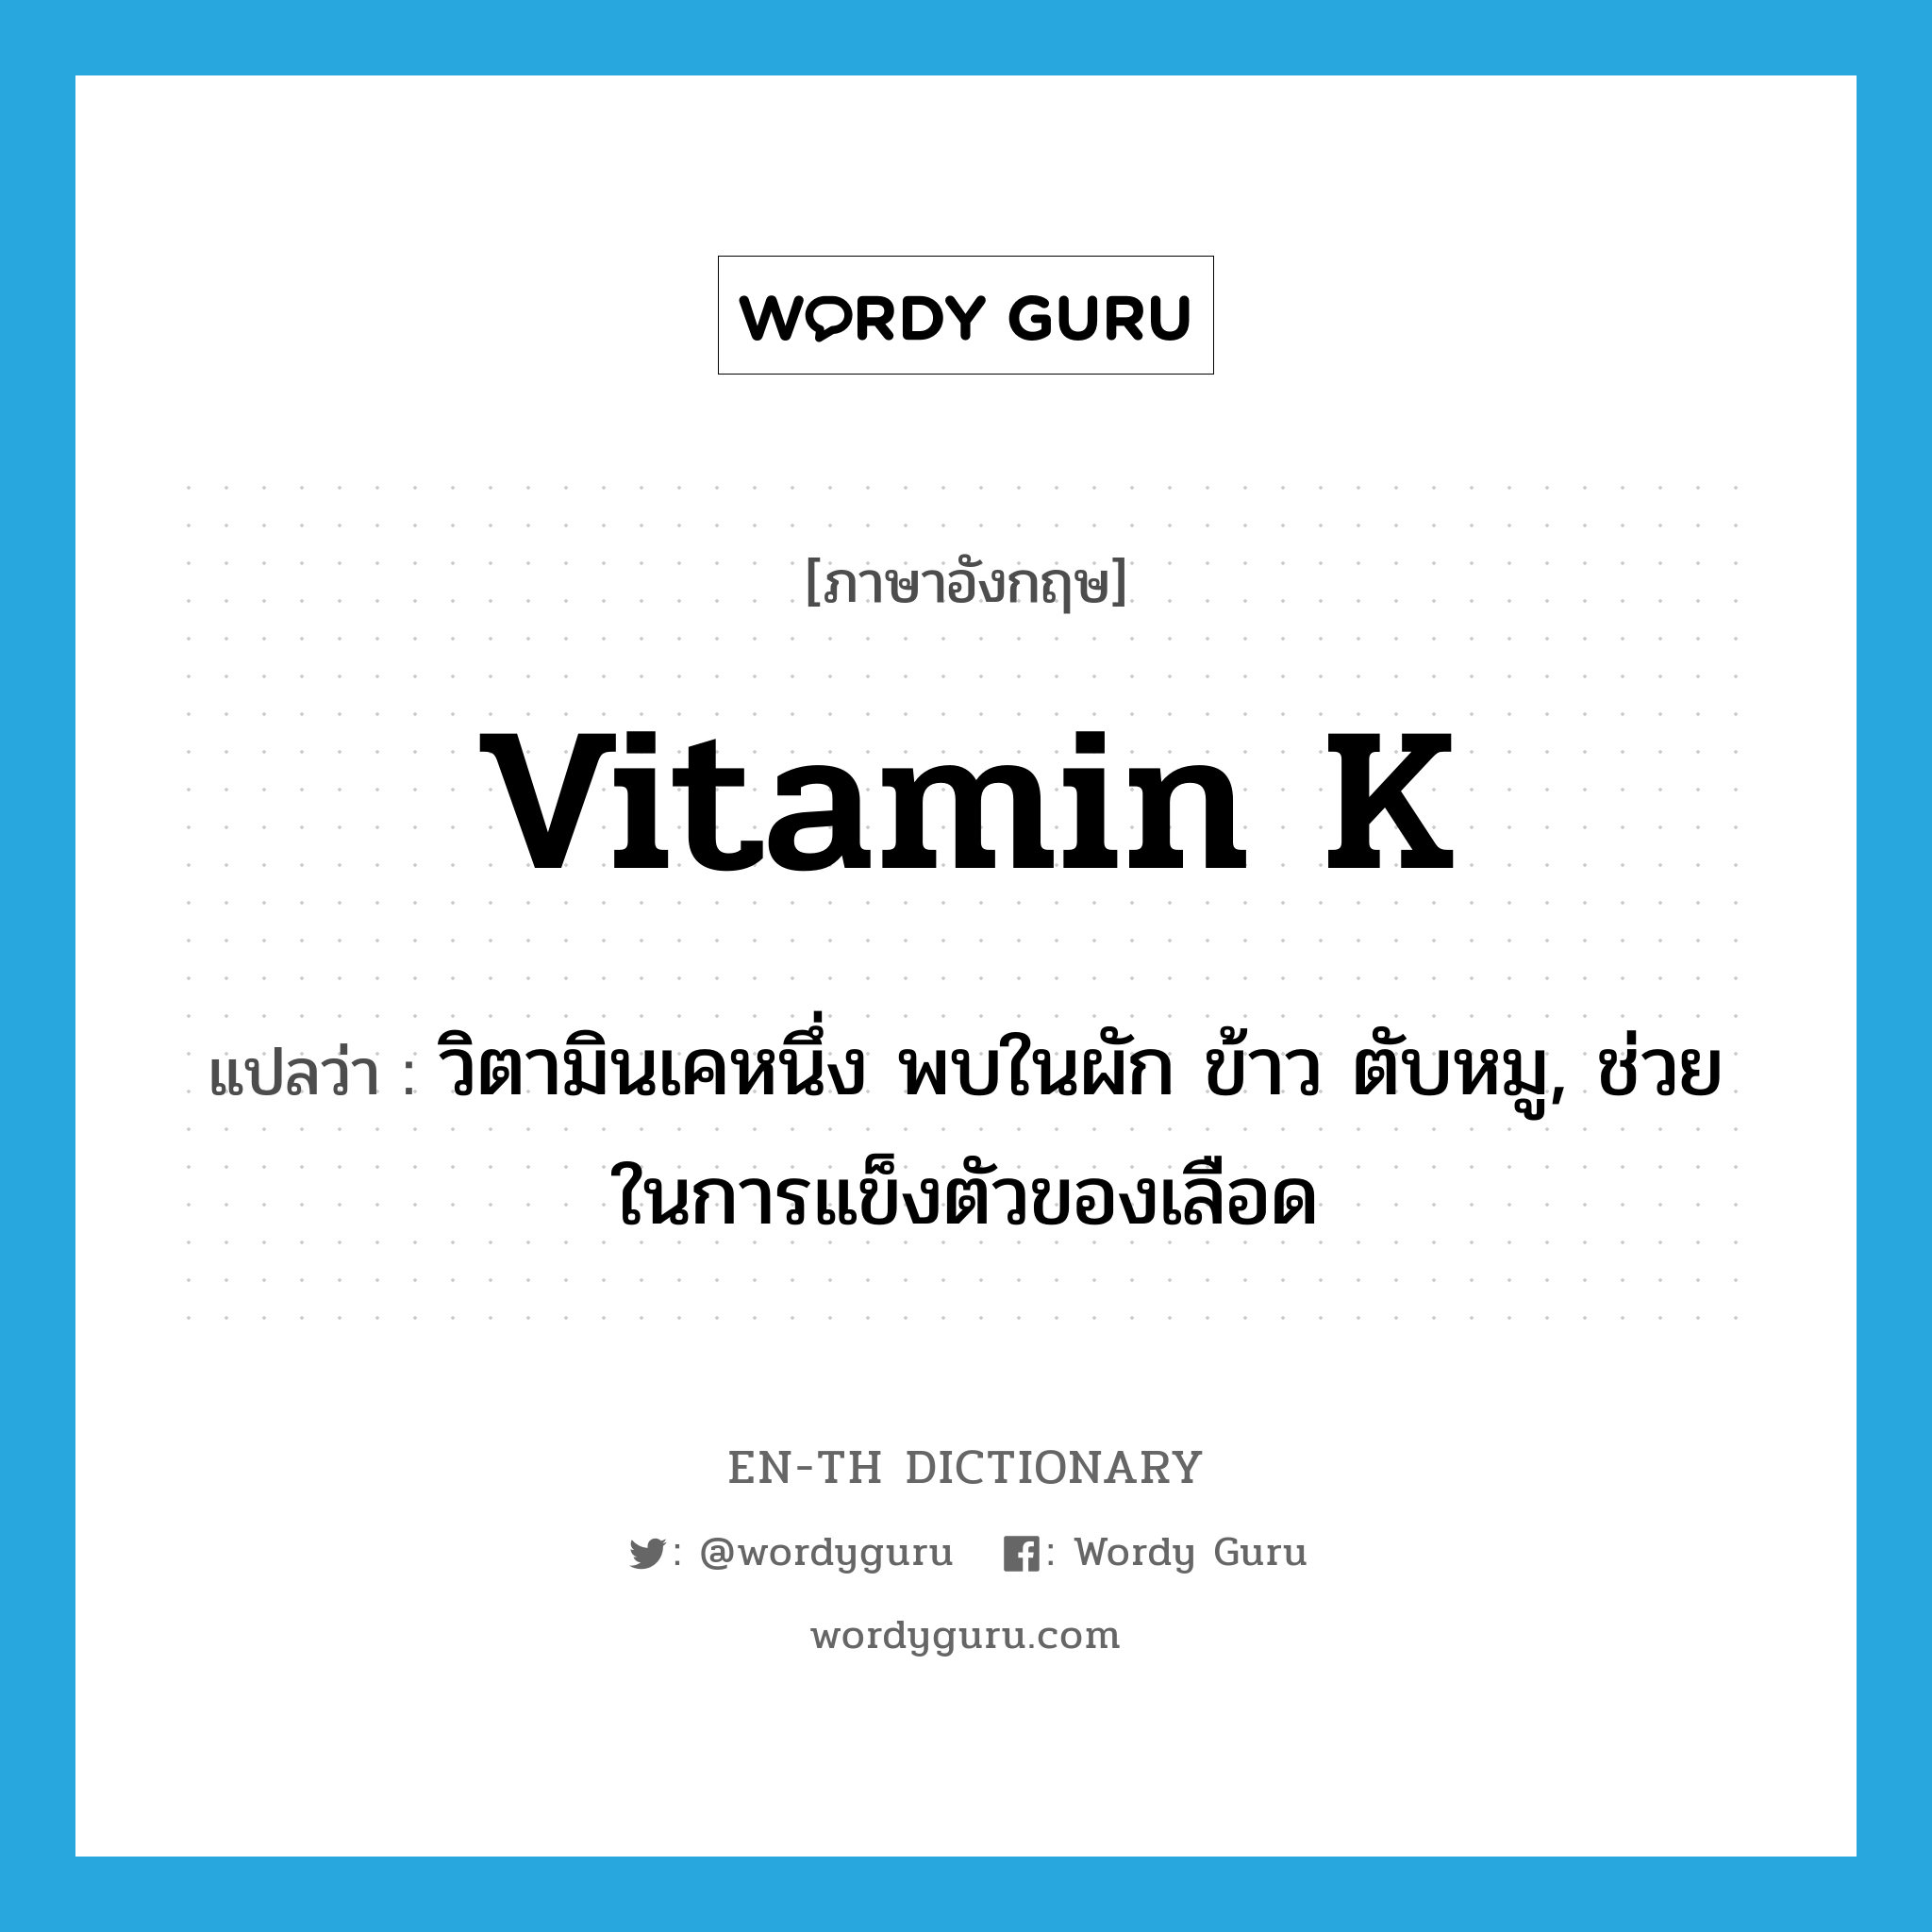 vitamin K แปลว่า?, คำศัพท์ภาษาอังกฤษ vitamin K แปลว่า วิตามินเคหนึ่ง พบในผัก ข้าว ตับหมู, ช่วยในการแข็งตัวของเลือด ประเภท N หมวด N